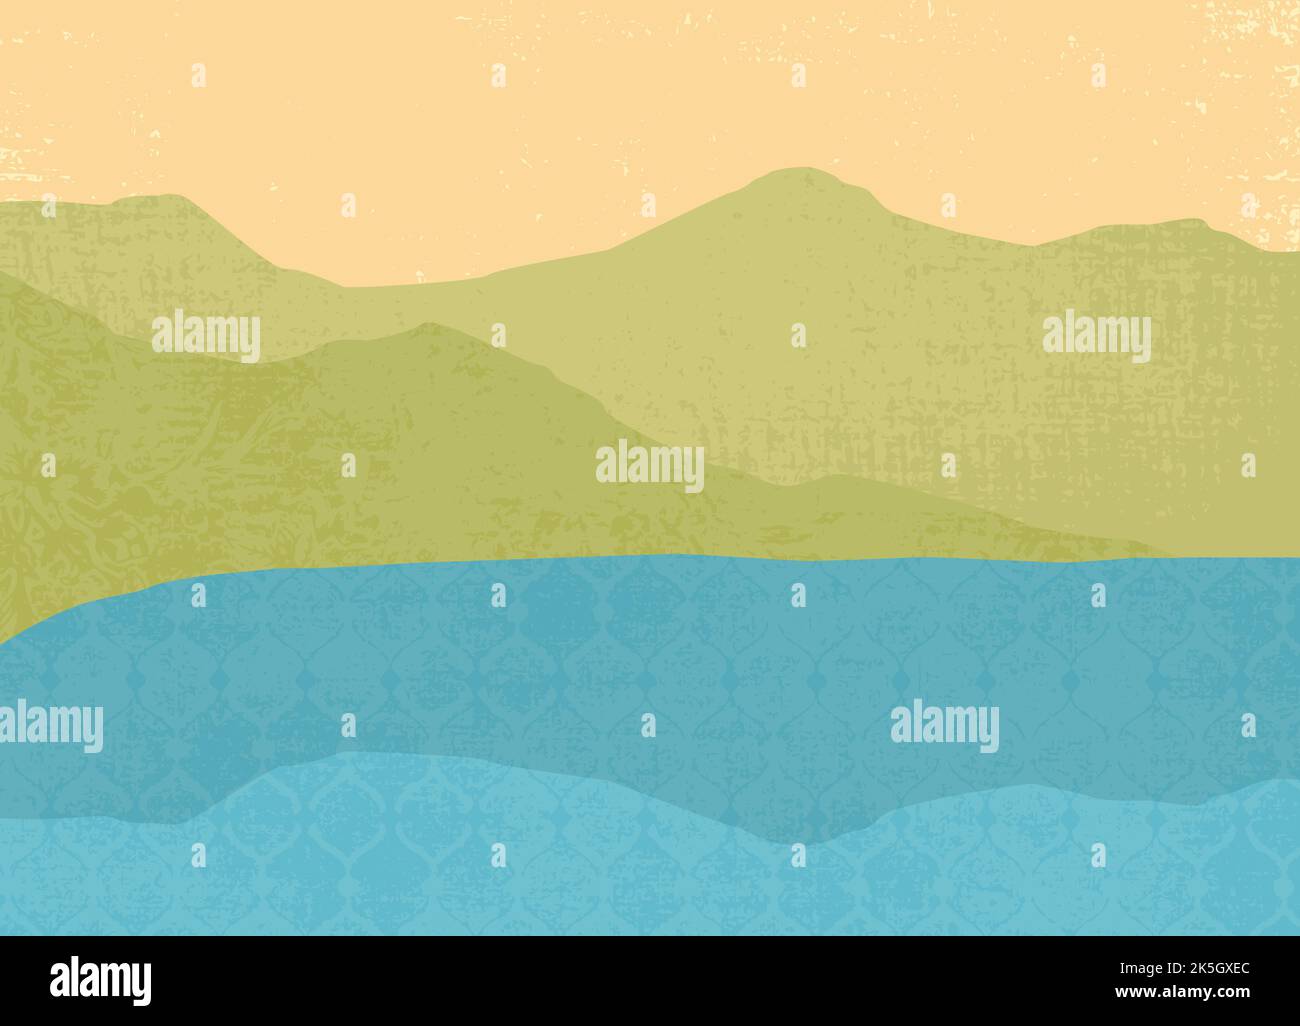 Un paysage abstrait de montagnes et d'eau, dans un style de papier coupé avec des textures Illustration de Vecteur